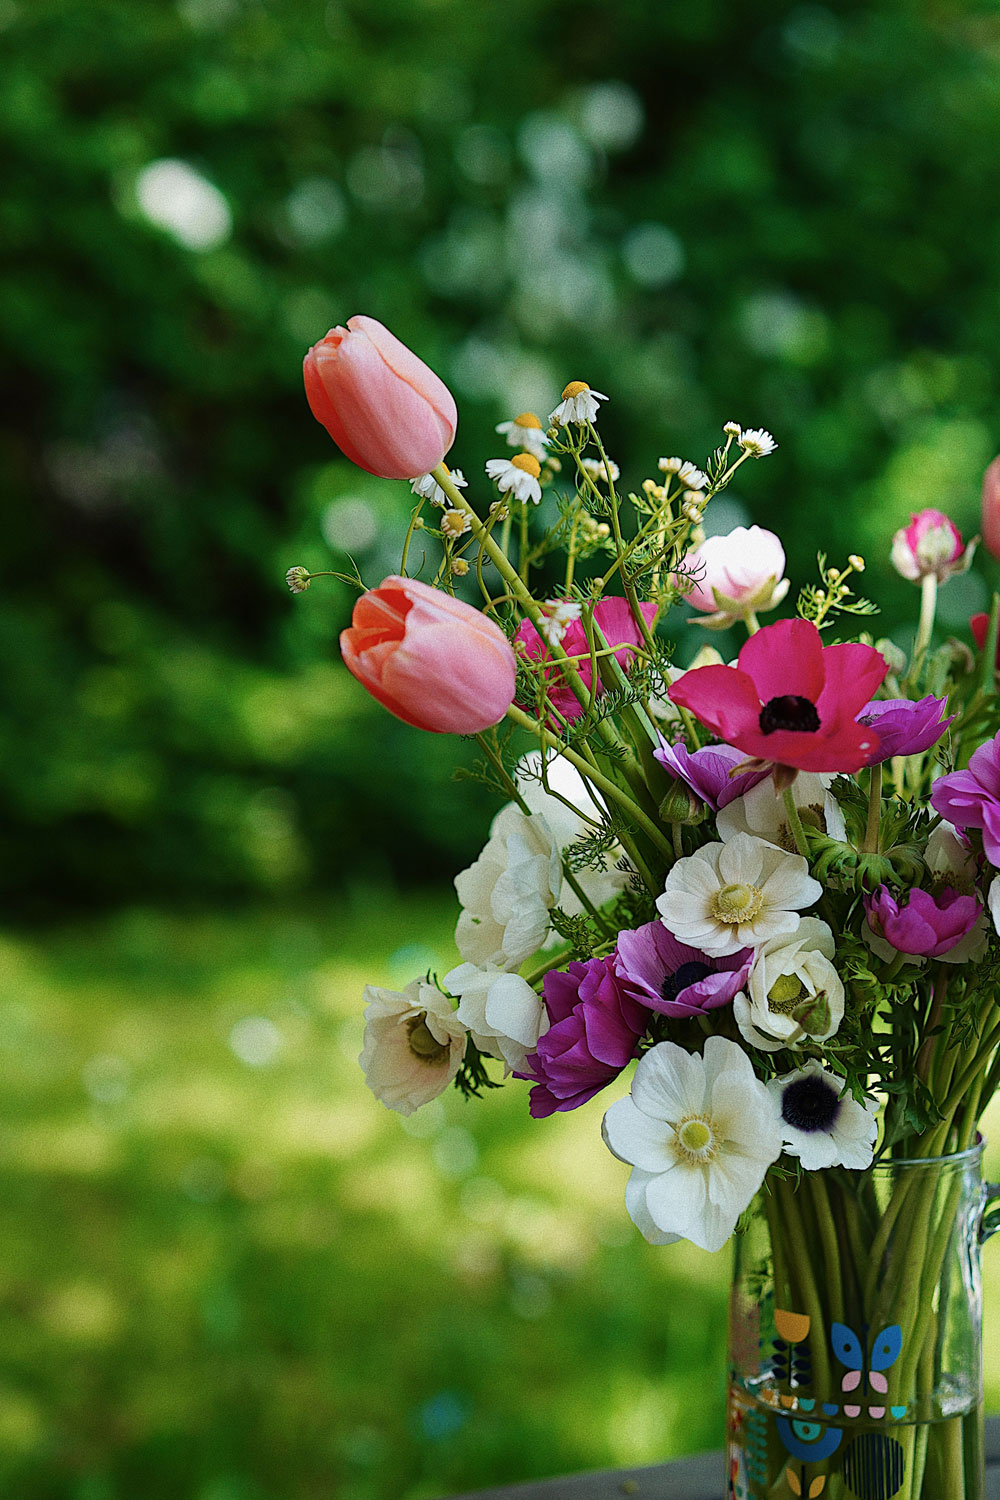 Flowerpower und Frauenpower: sonrisa verlost zwei Bons für den Onlineshop Bluemlisex von Girlboss Ulrike, die nachhaltige Blumen aus der Schweiz anbietet.